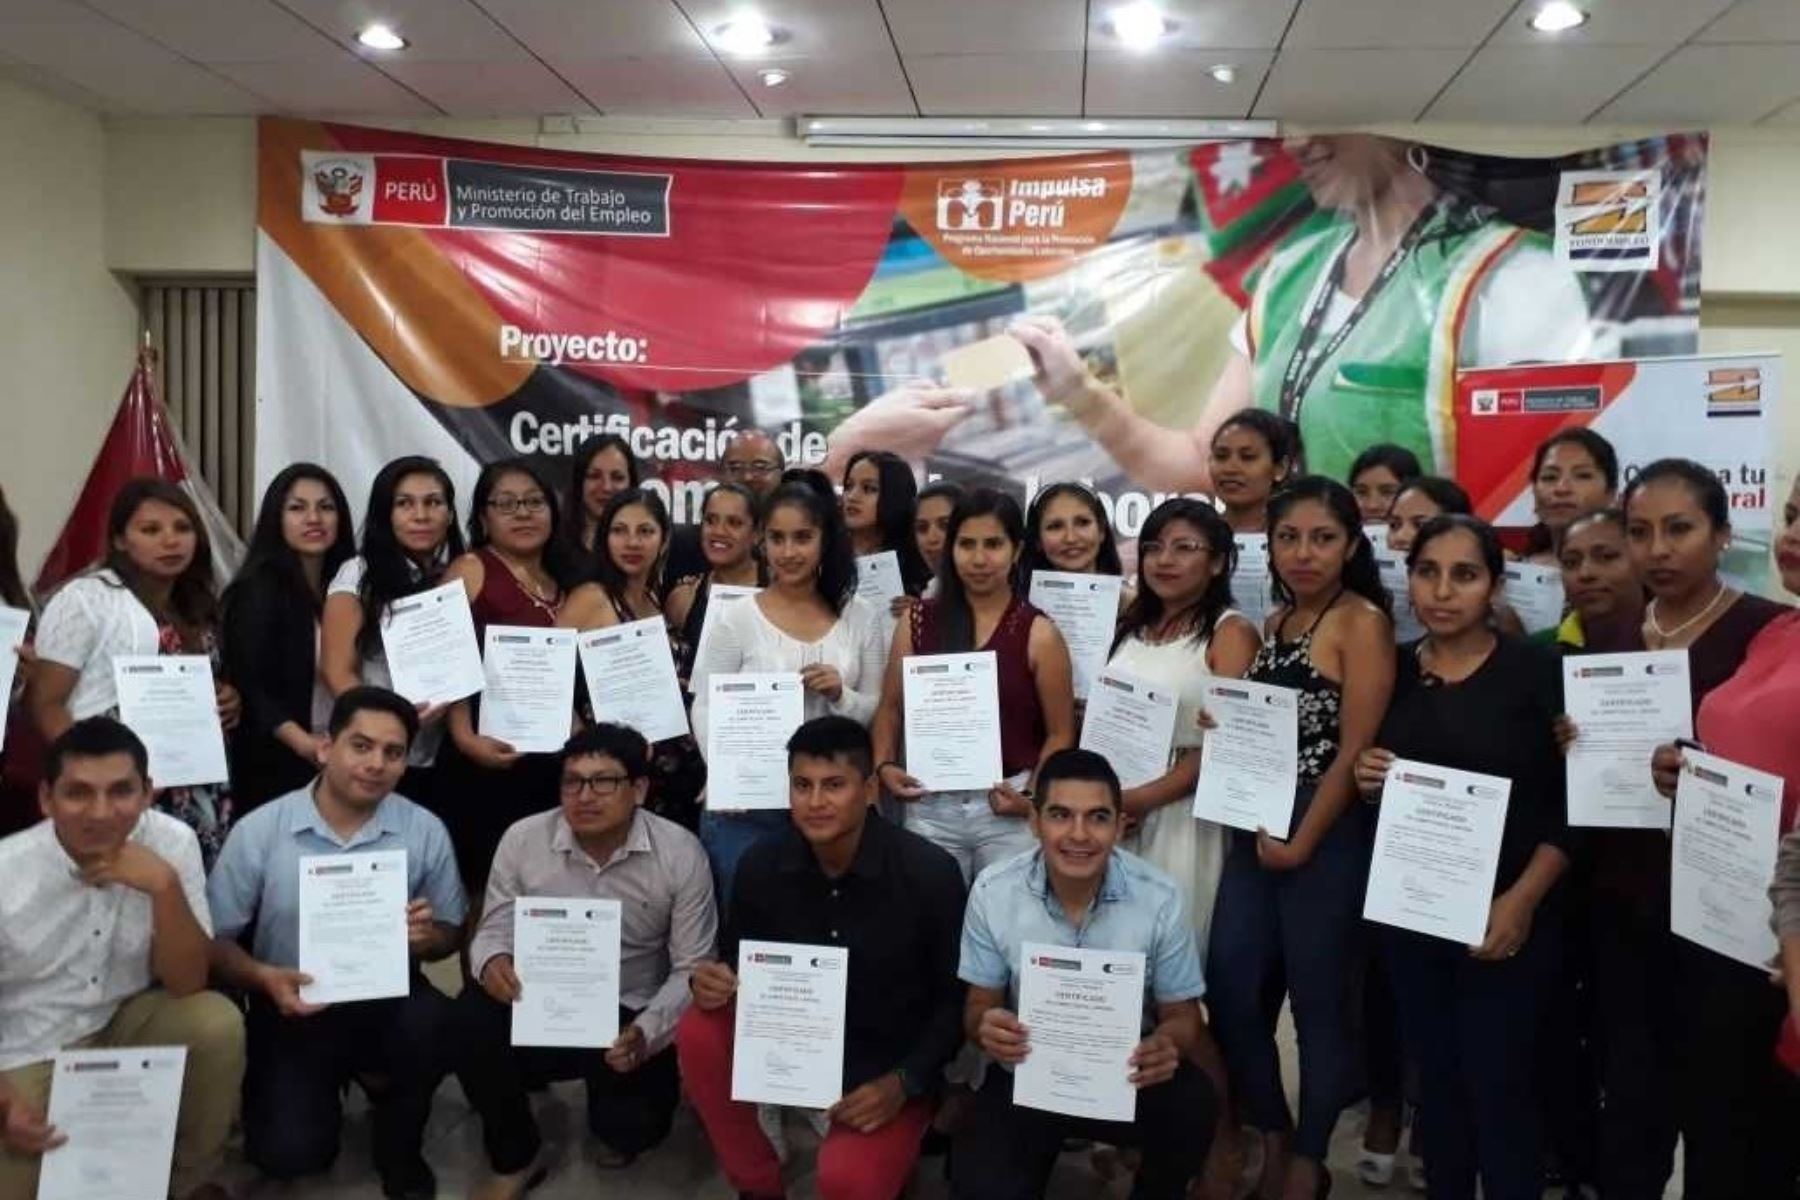 El programa Impulsa Perú del Ministerio de Trabajo y Promoción del Empleo (MTPE) certificó las competencias laborales de 80 personas que se desempeñan como cajeros en diversos establecimientos comerciales de la región Lambayeque.